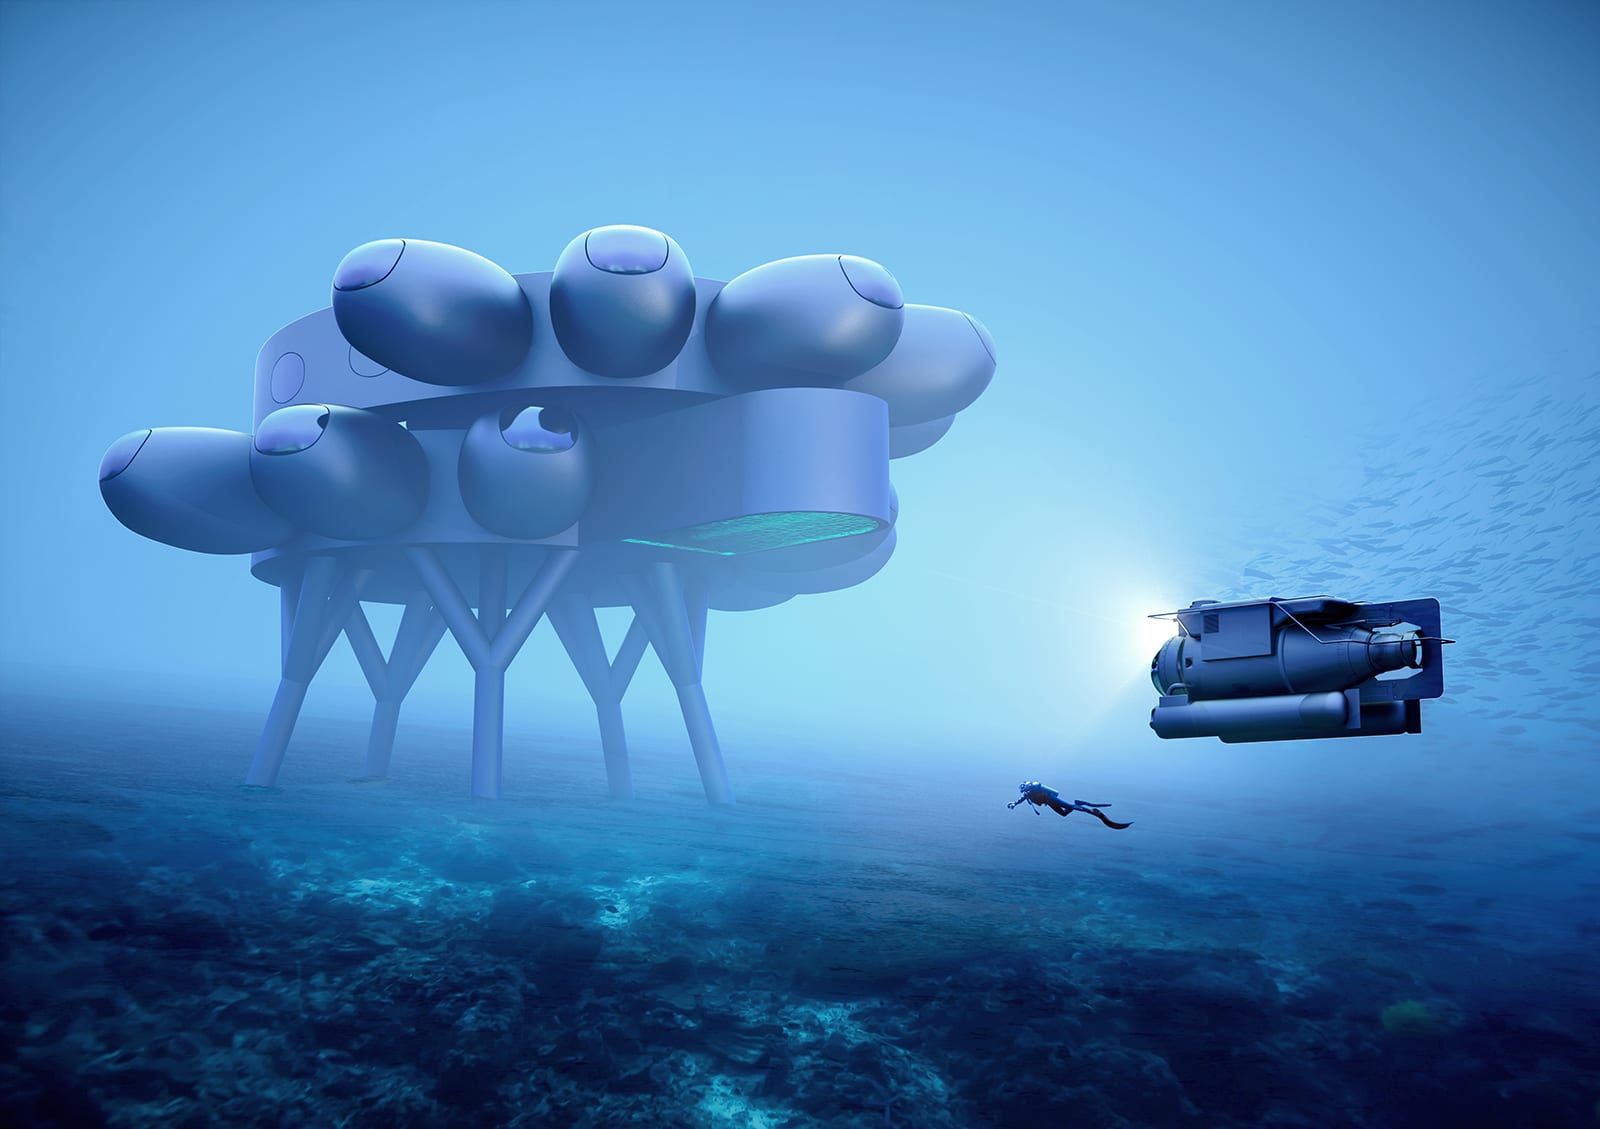 كشف النقاب عن تصاميم طموحة لـ "محطة الفضاء" ومستوطنة تحت الماء.. كيف ستبدو؟